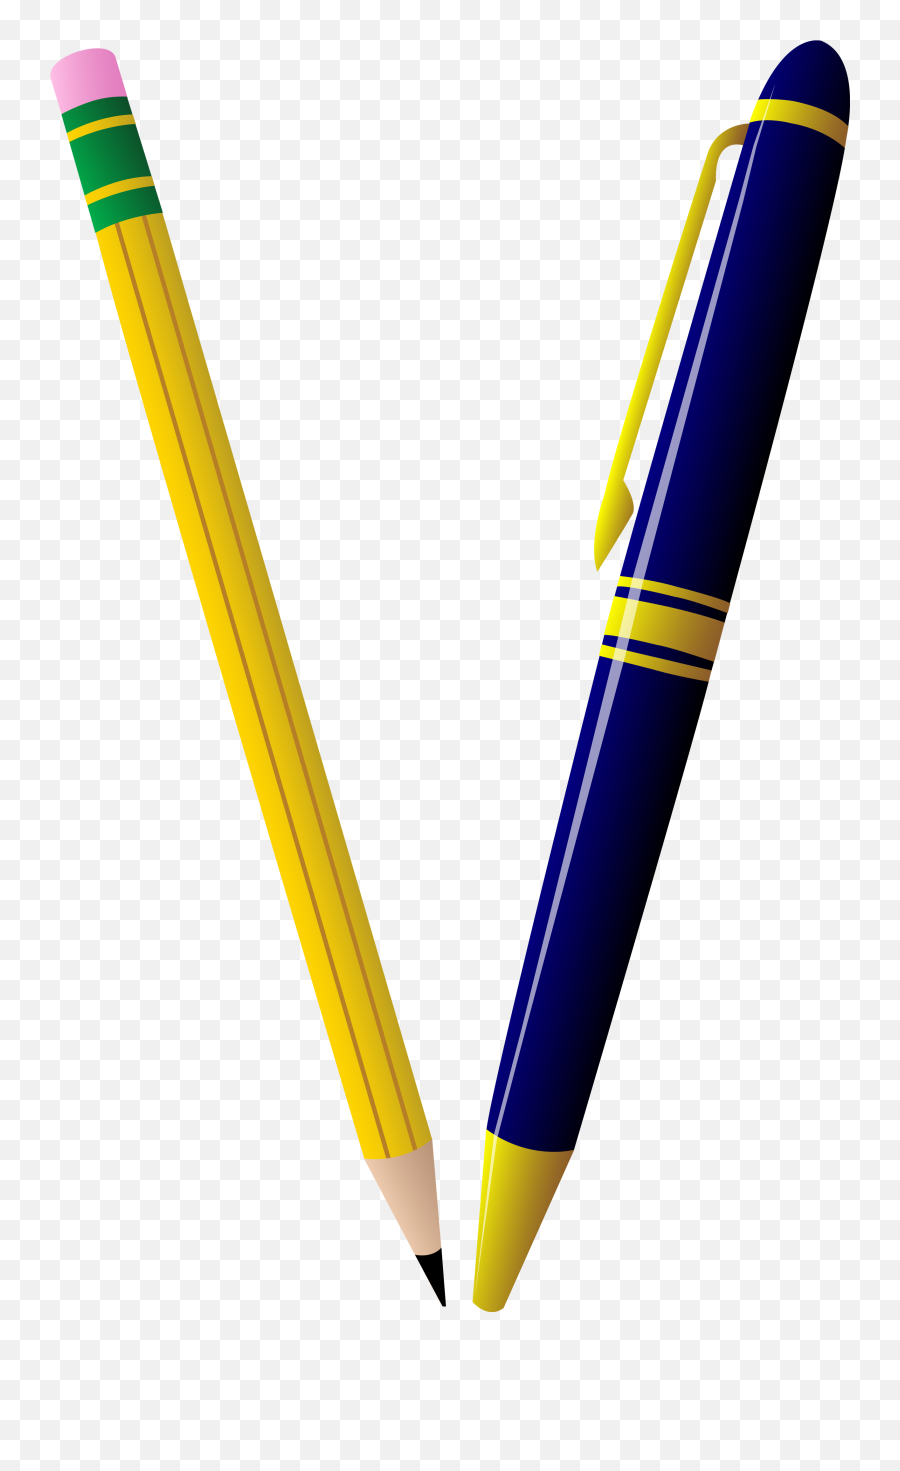 Pen And Pencil Clipart 3 - Clipartix Pen And Pencil Clipart Emoji,Pencil Emoji